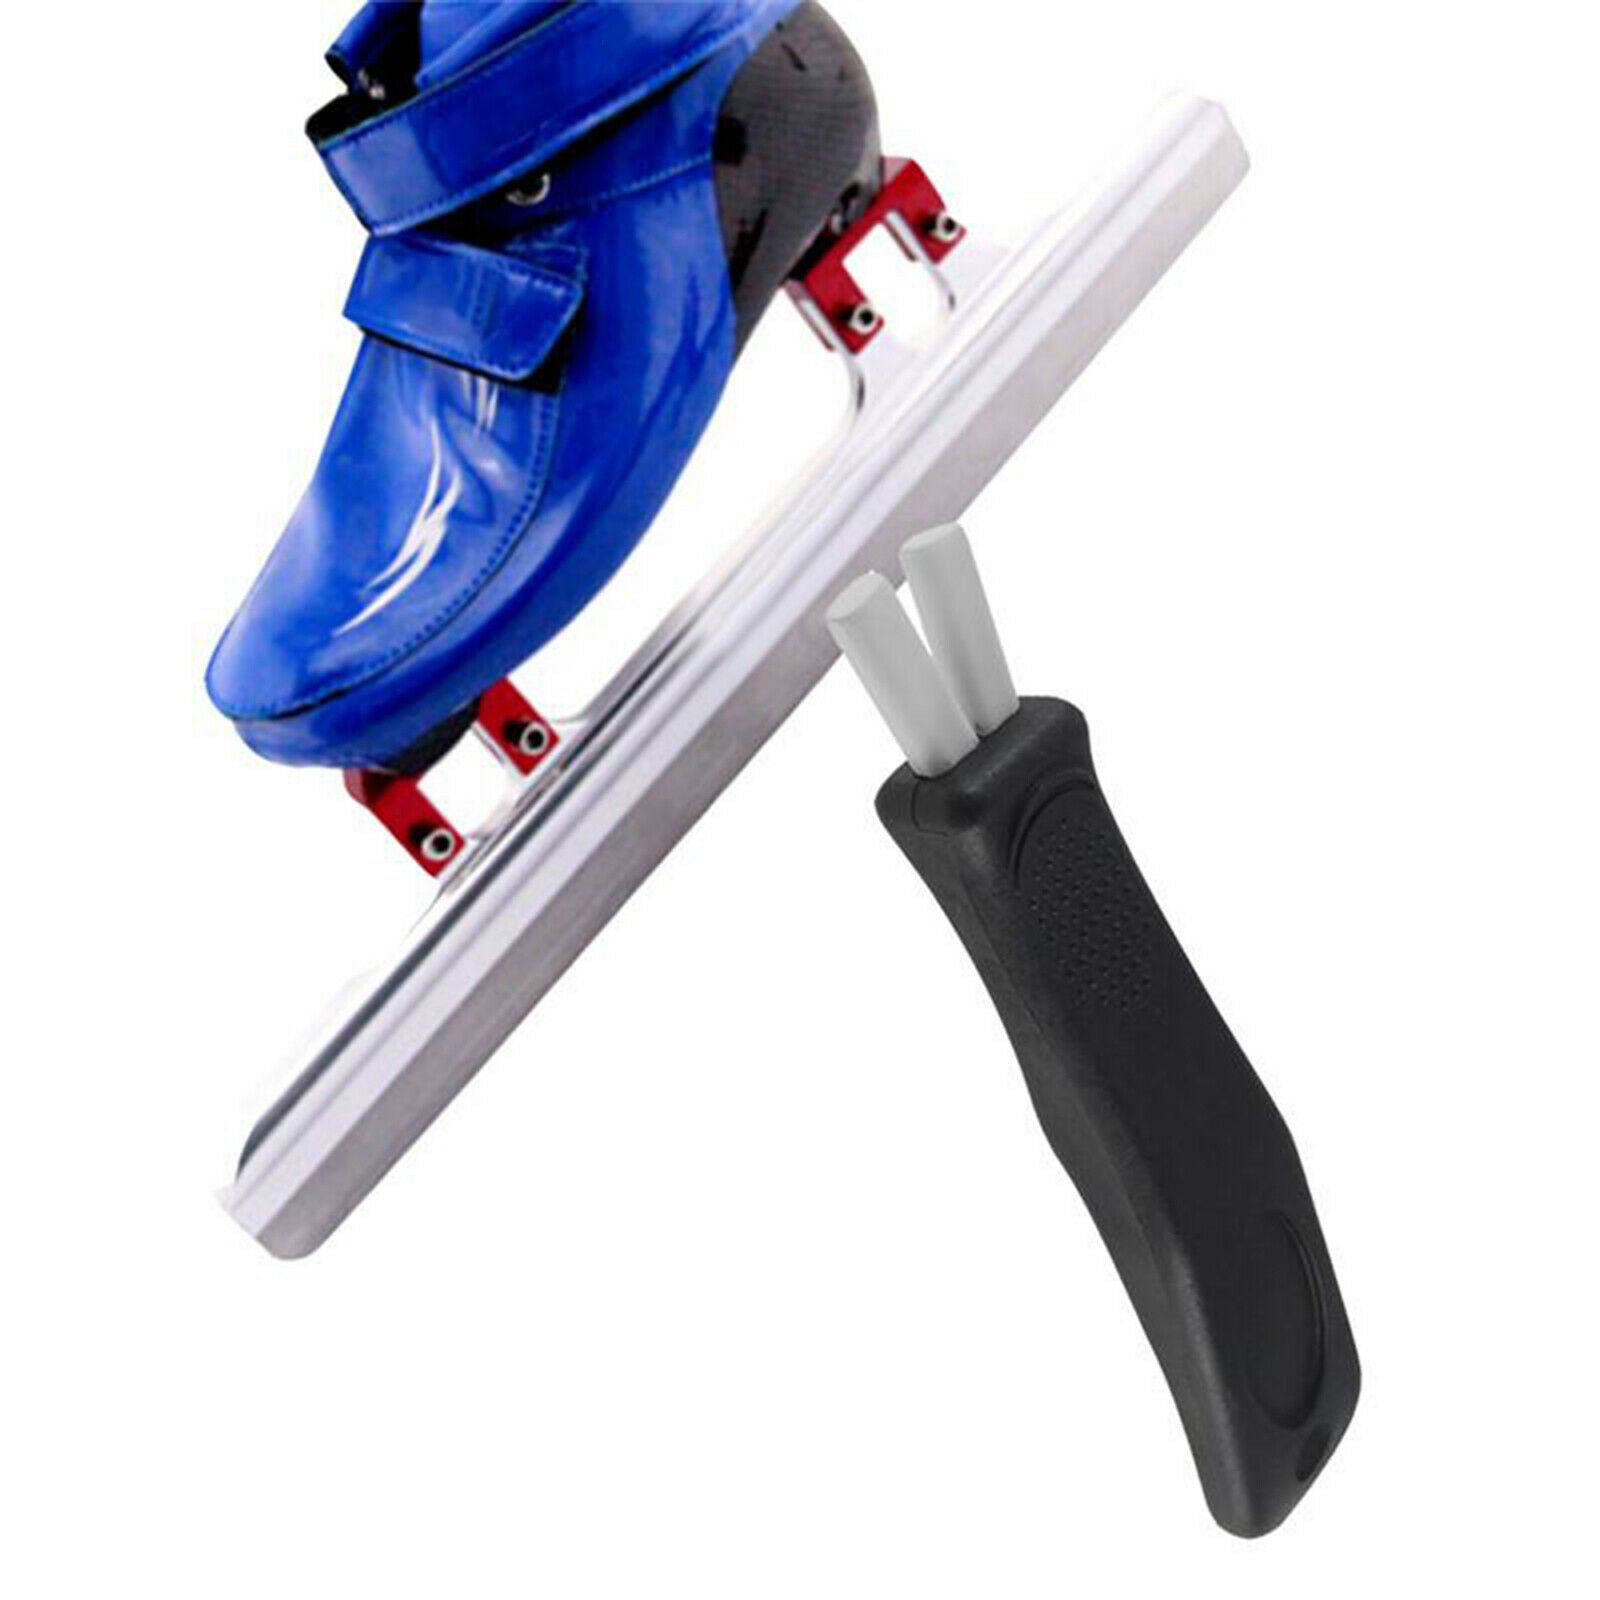 Portable Ice Skate Sharpener Hand Held Sharpen Edge Sharpenings for All Type